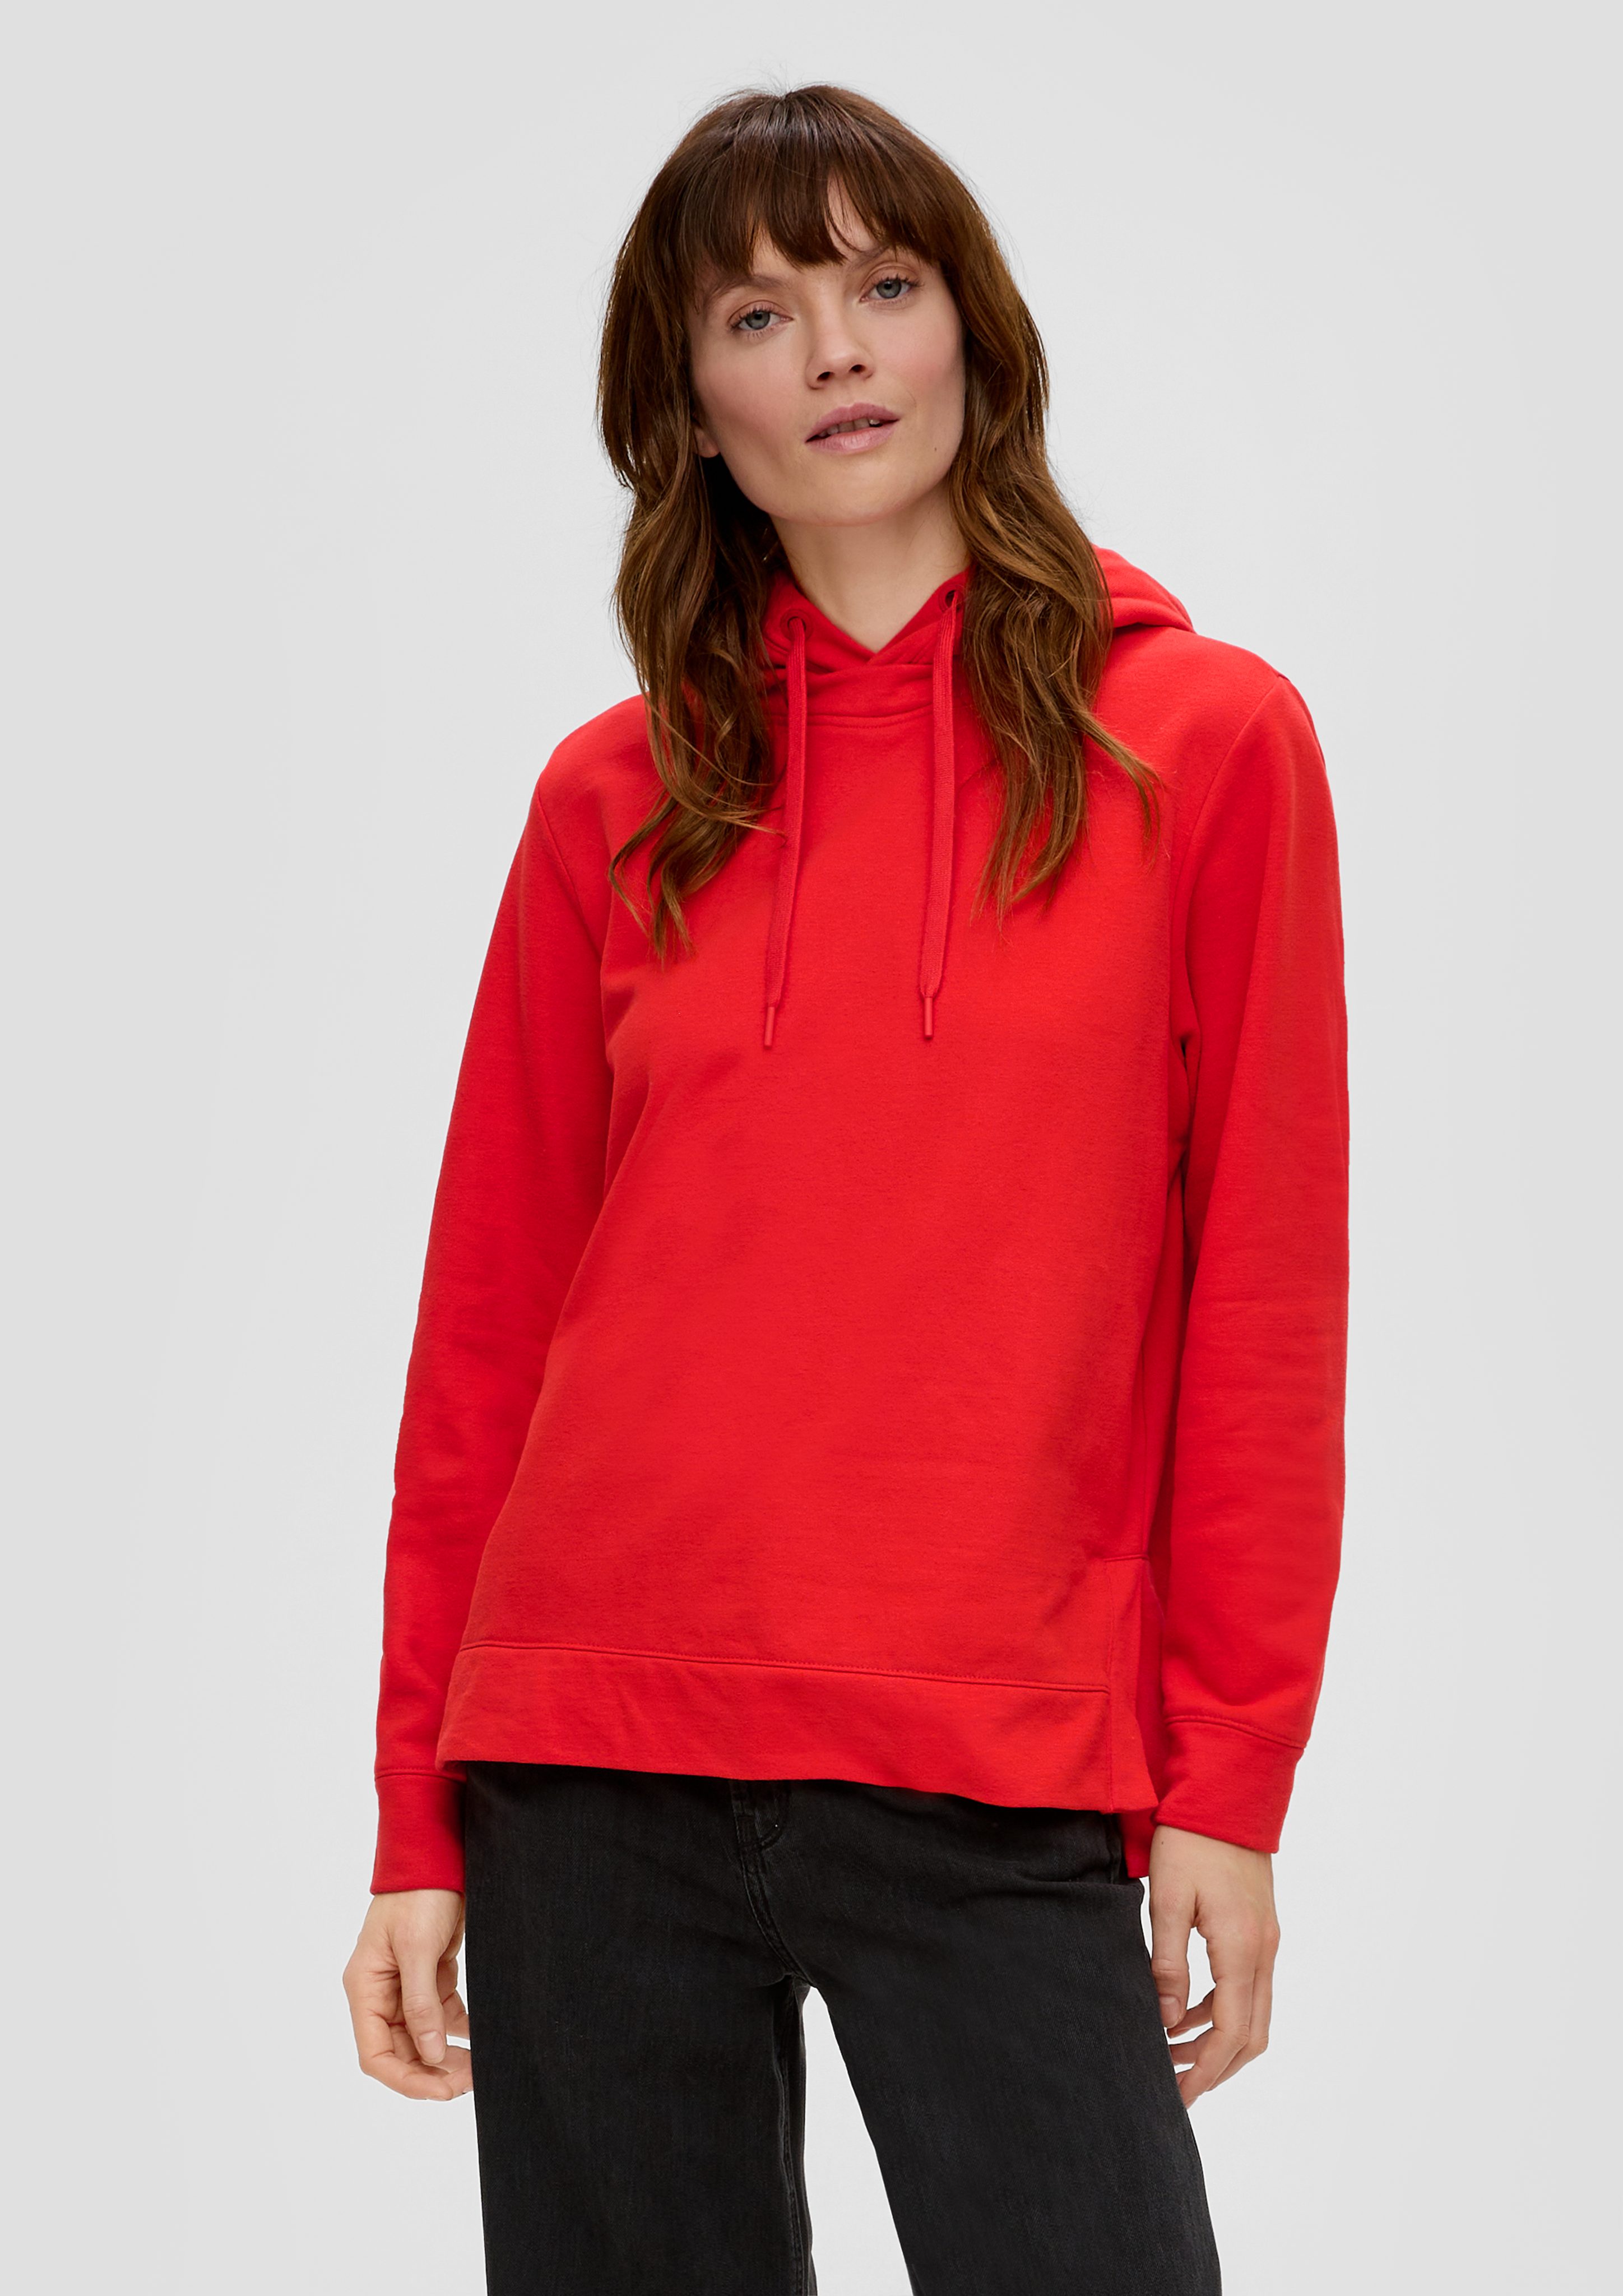 Durchzugkordel aus s.Oliver Kapuzen-Sweatshirt Sweatshirt Baumwollmix rot